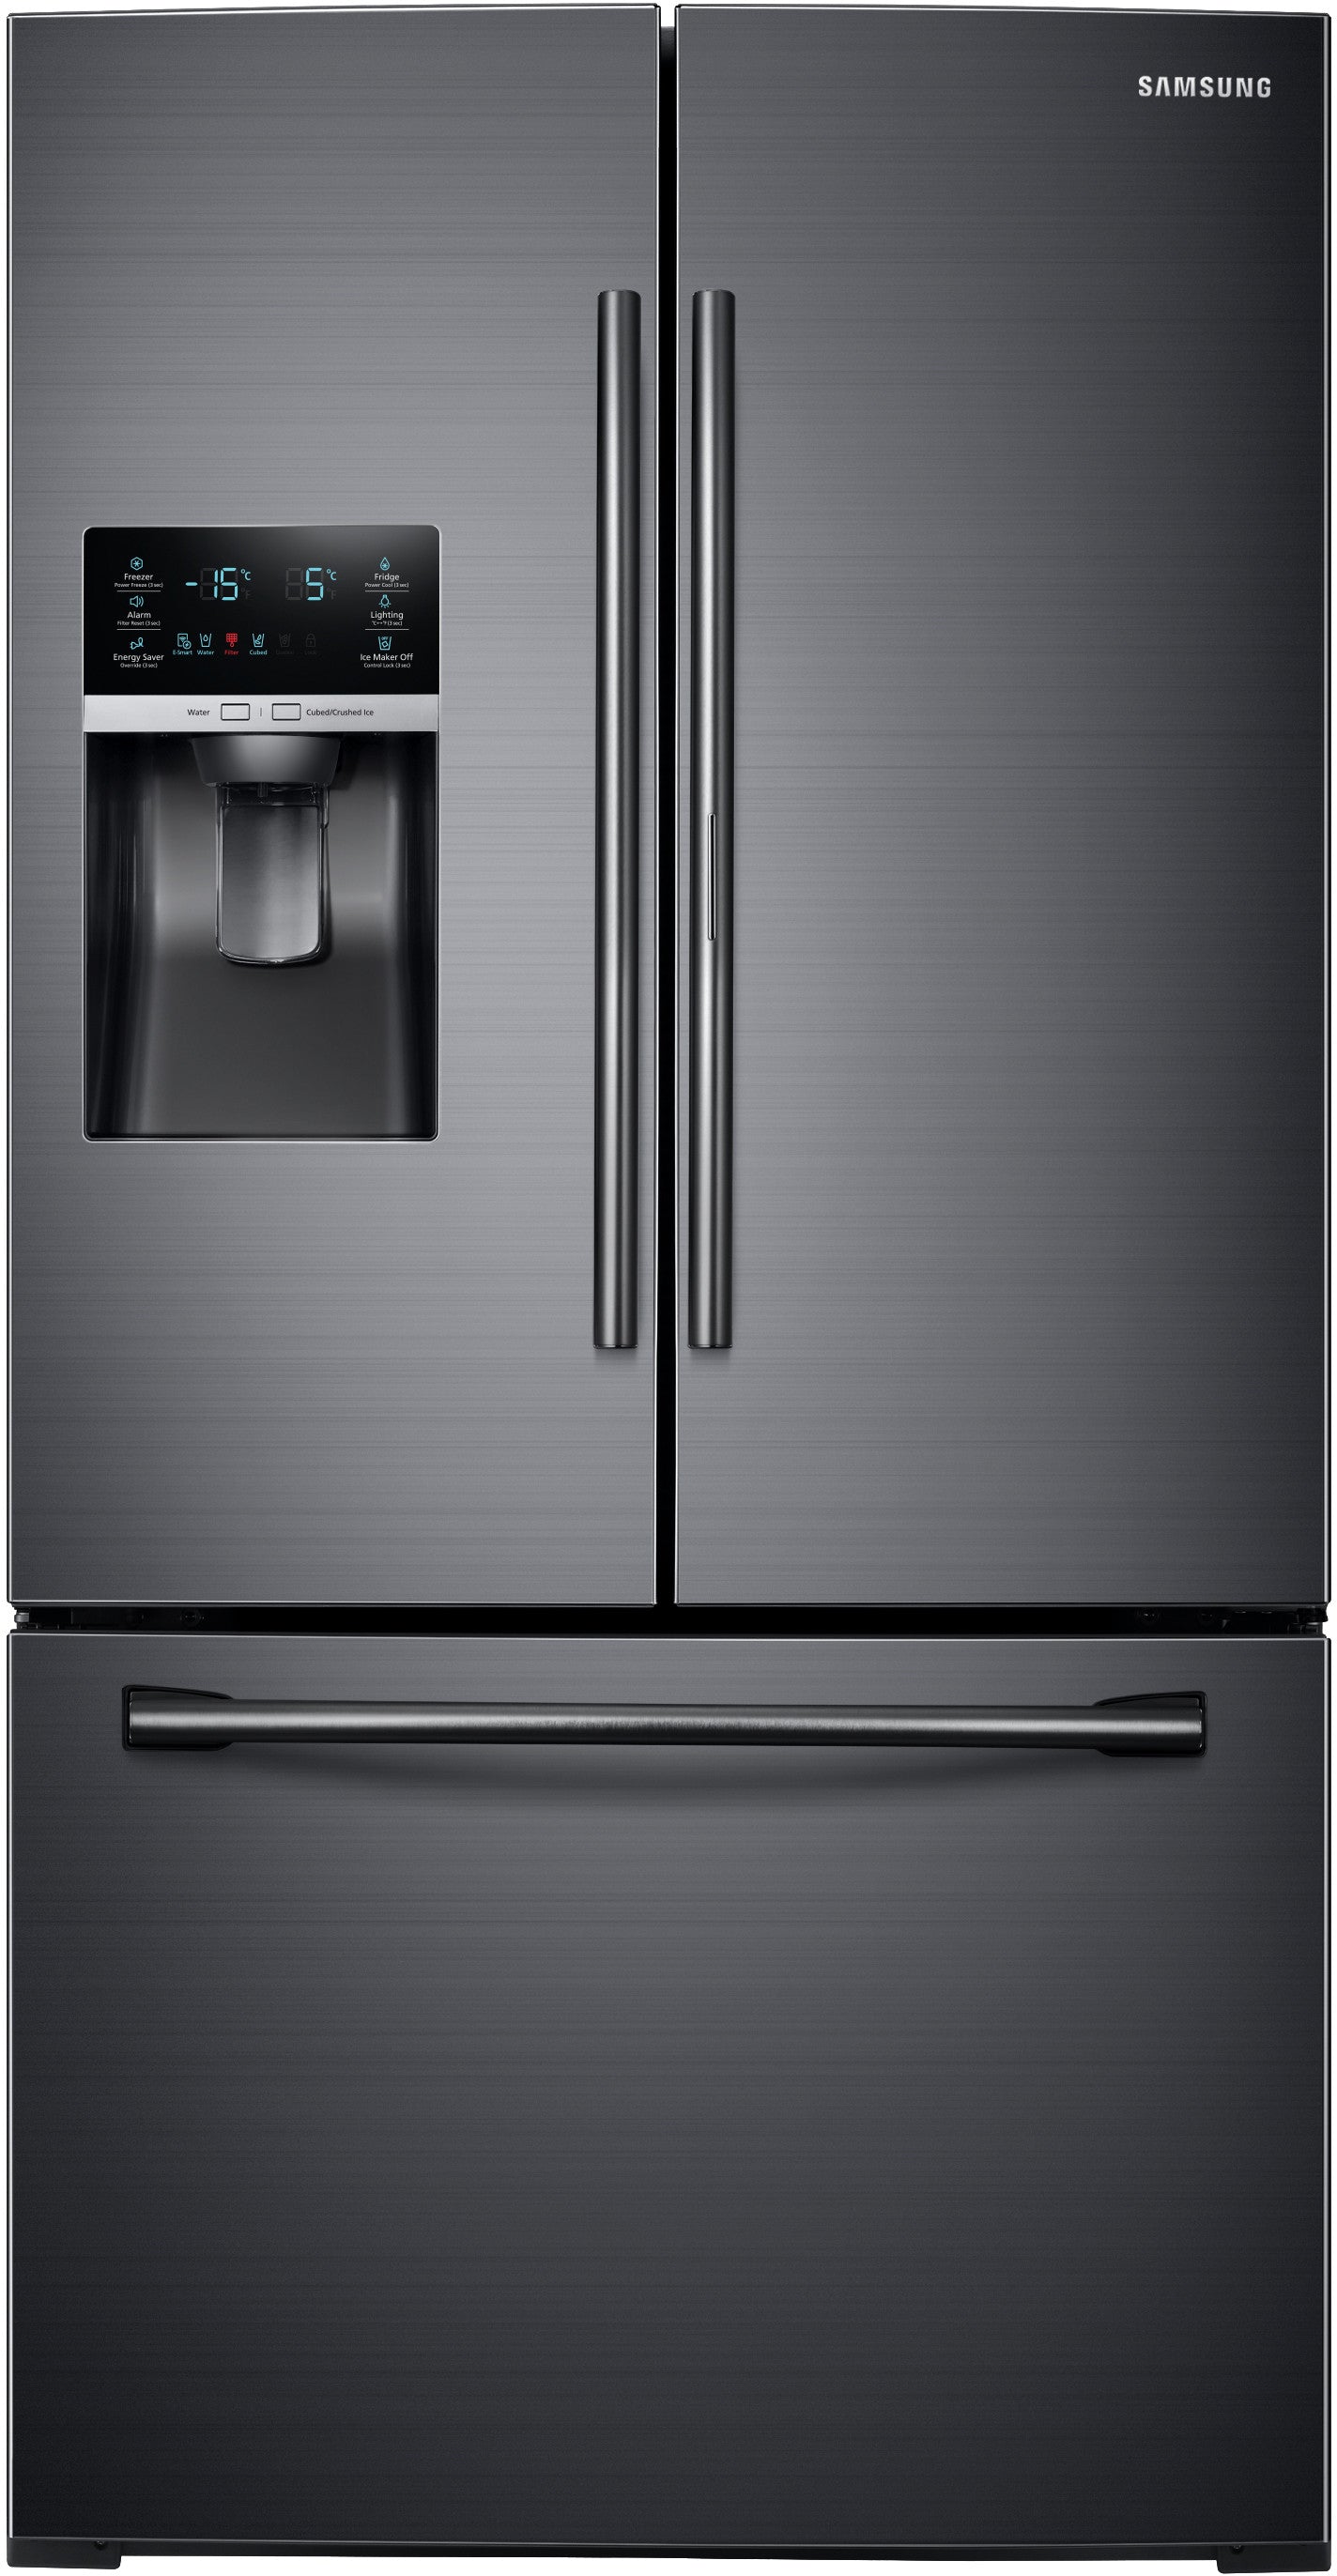 Samsung RF28HDEDBSG/AA 27.8 Cu. Ft. French Door Refrigerator